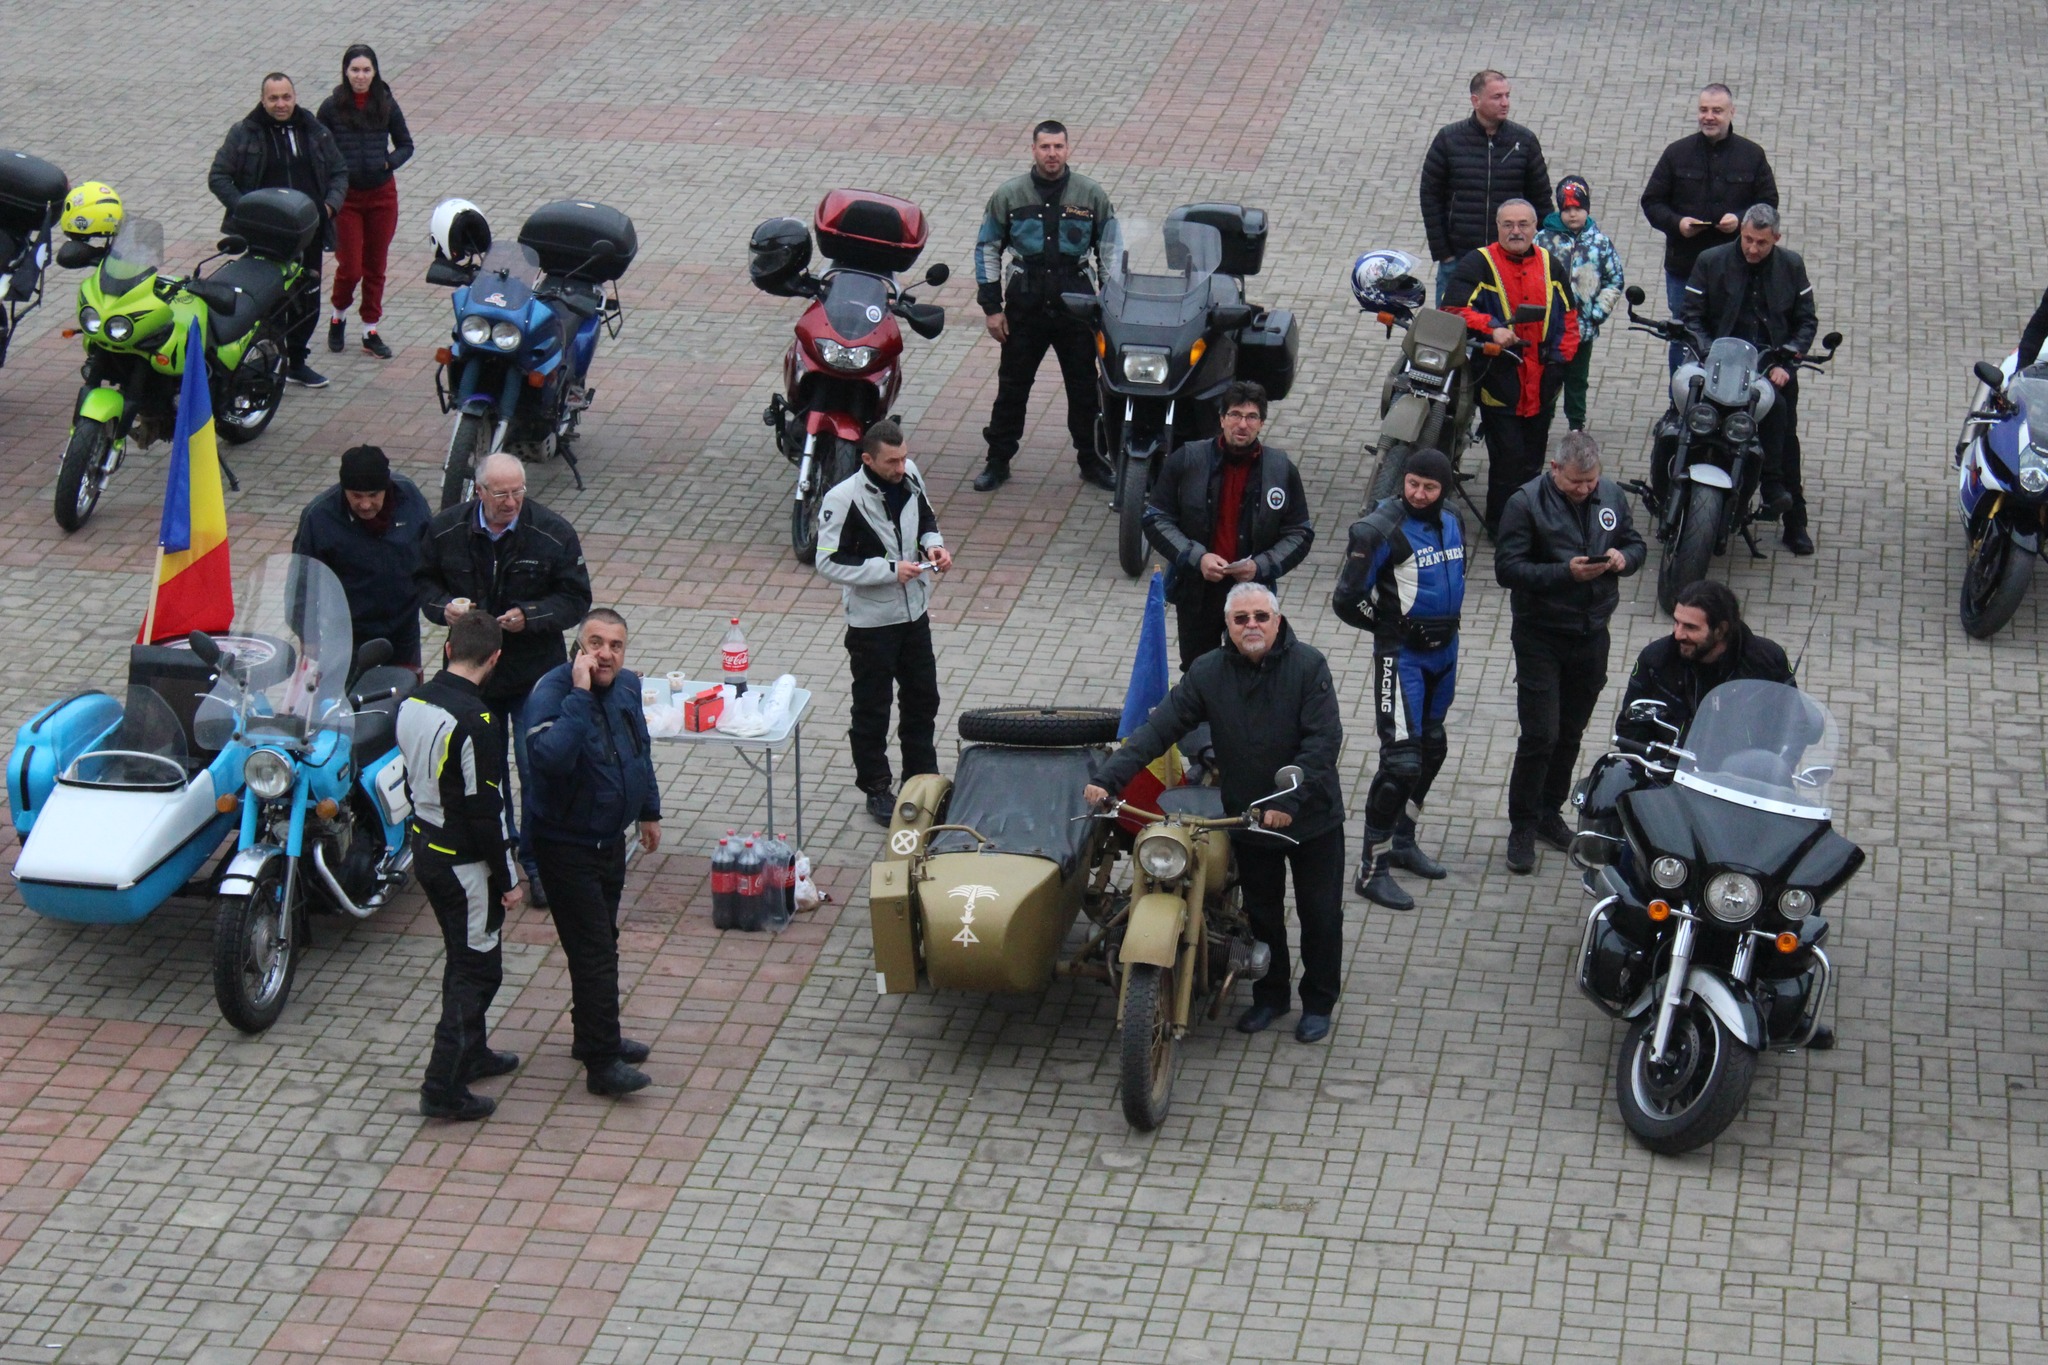 Dragostea pentru motoare a reînviat la Caracal/ Moto Romanați, stindardul bikerilor romanațeni